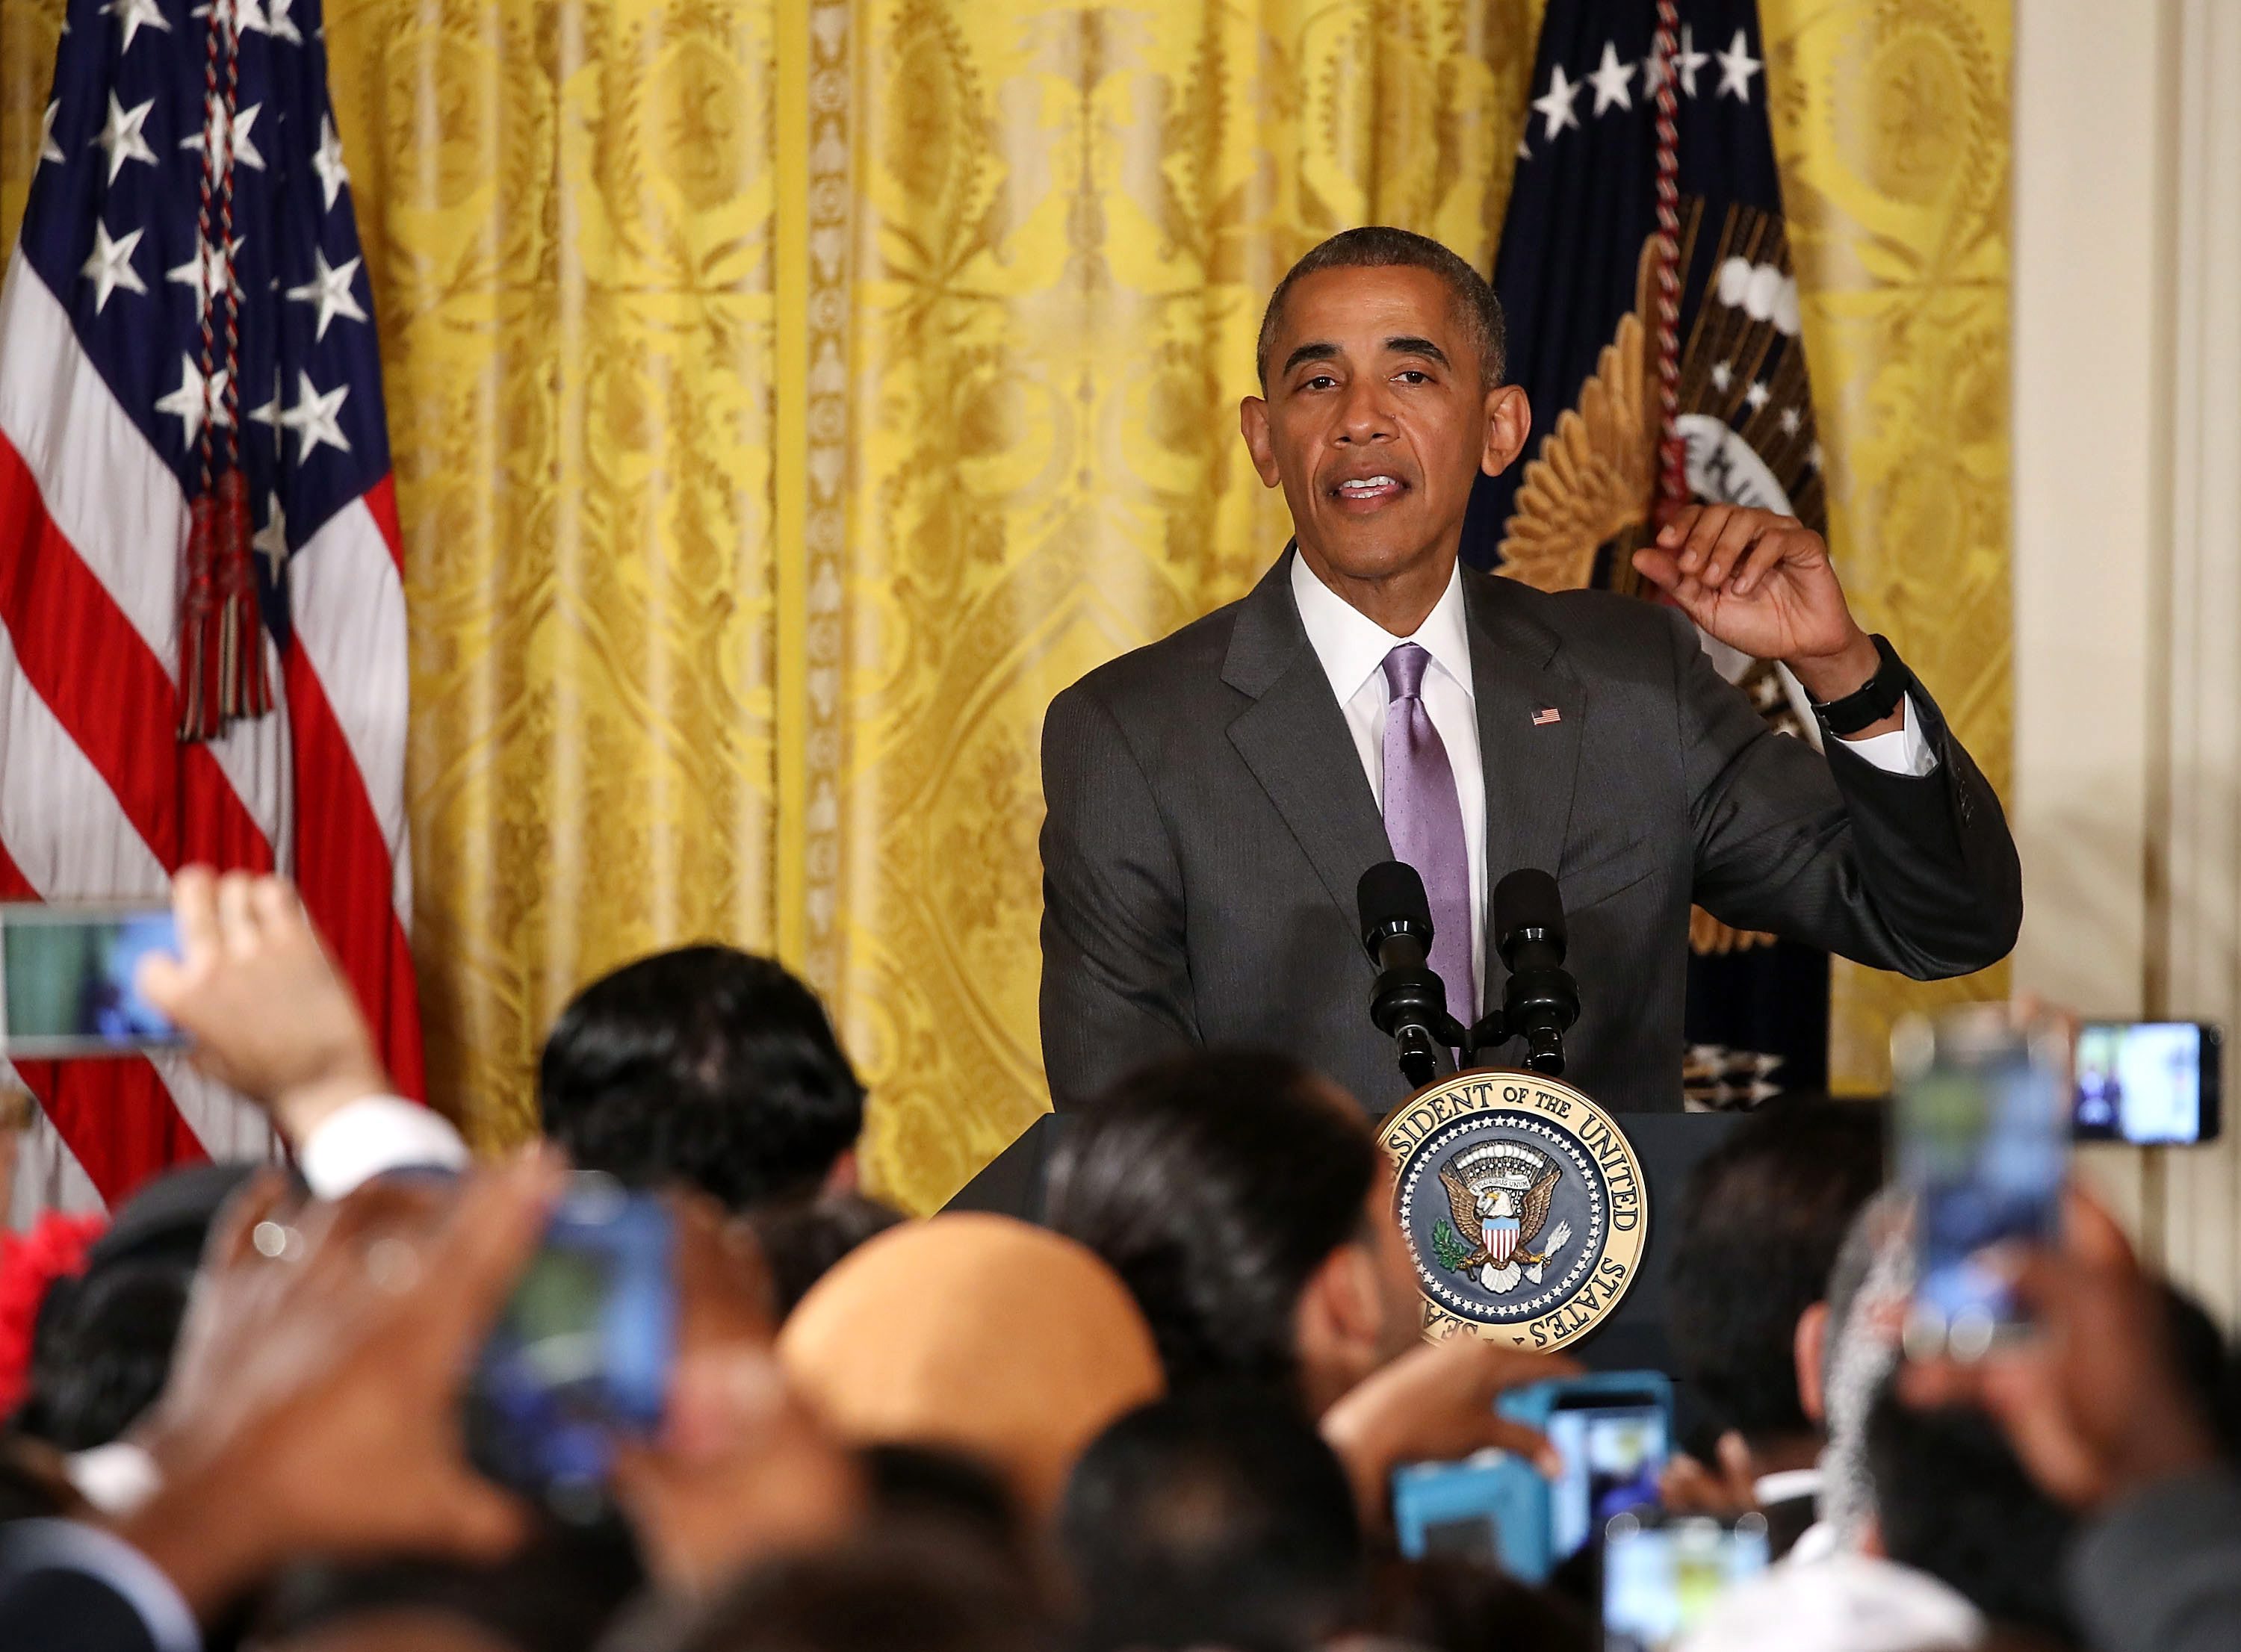 Ομπάμα: Οι διακρίσεις κατά μουσουλμάνων προσβάλλουν τις αμερικανικές αξίες